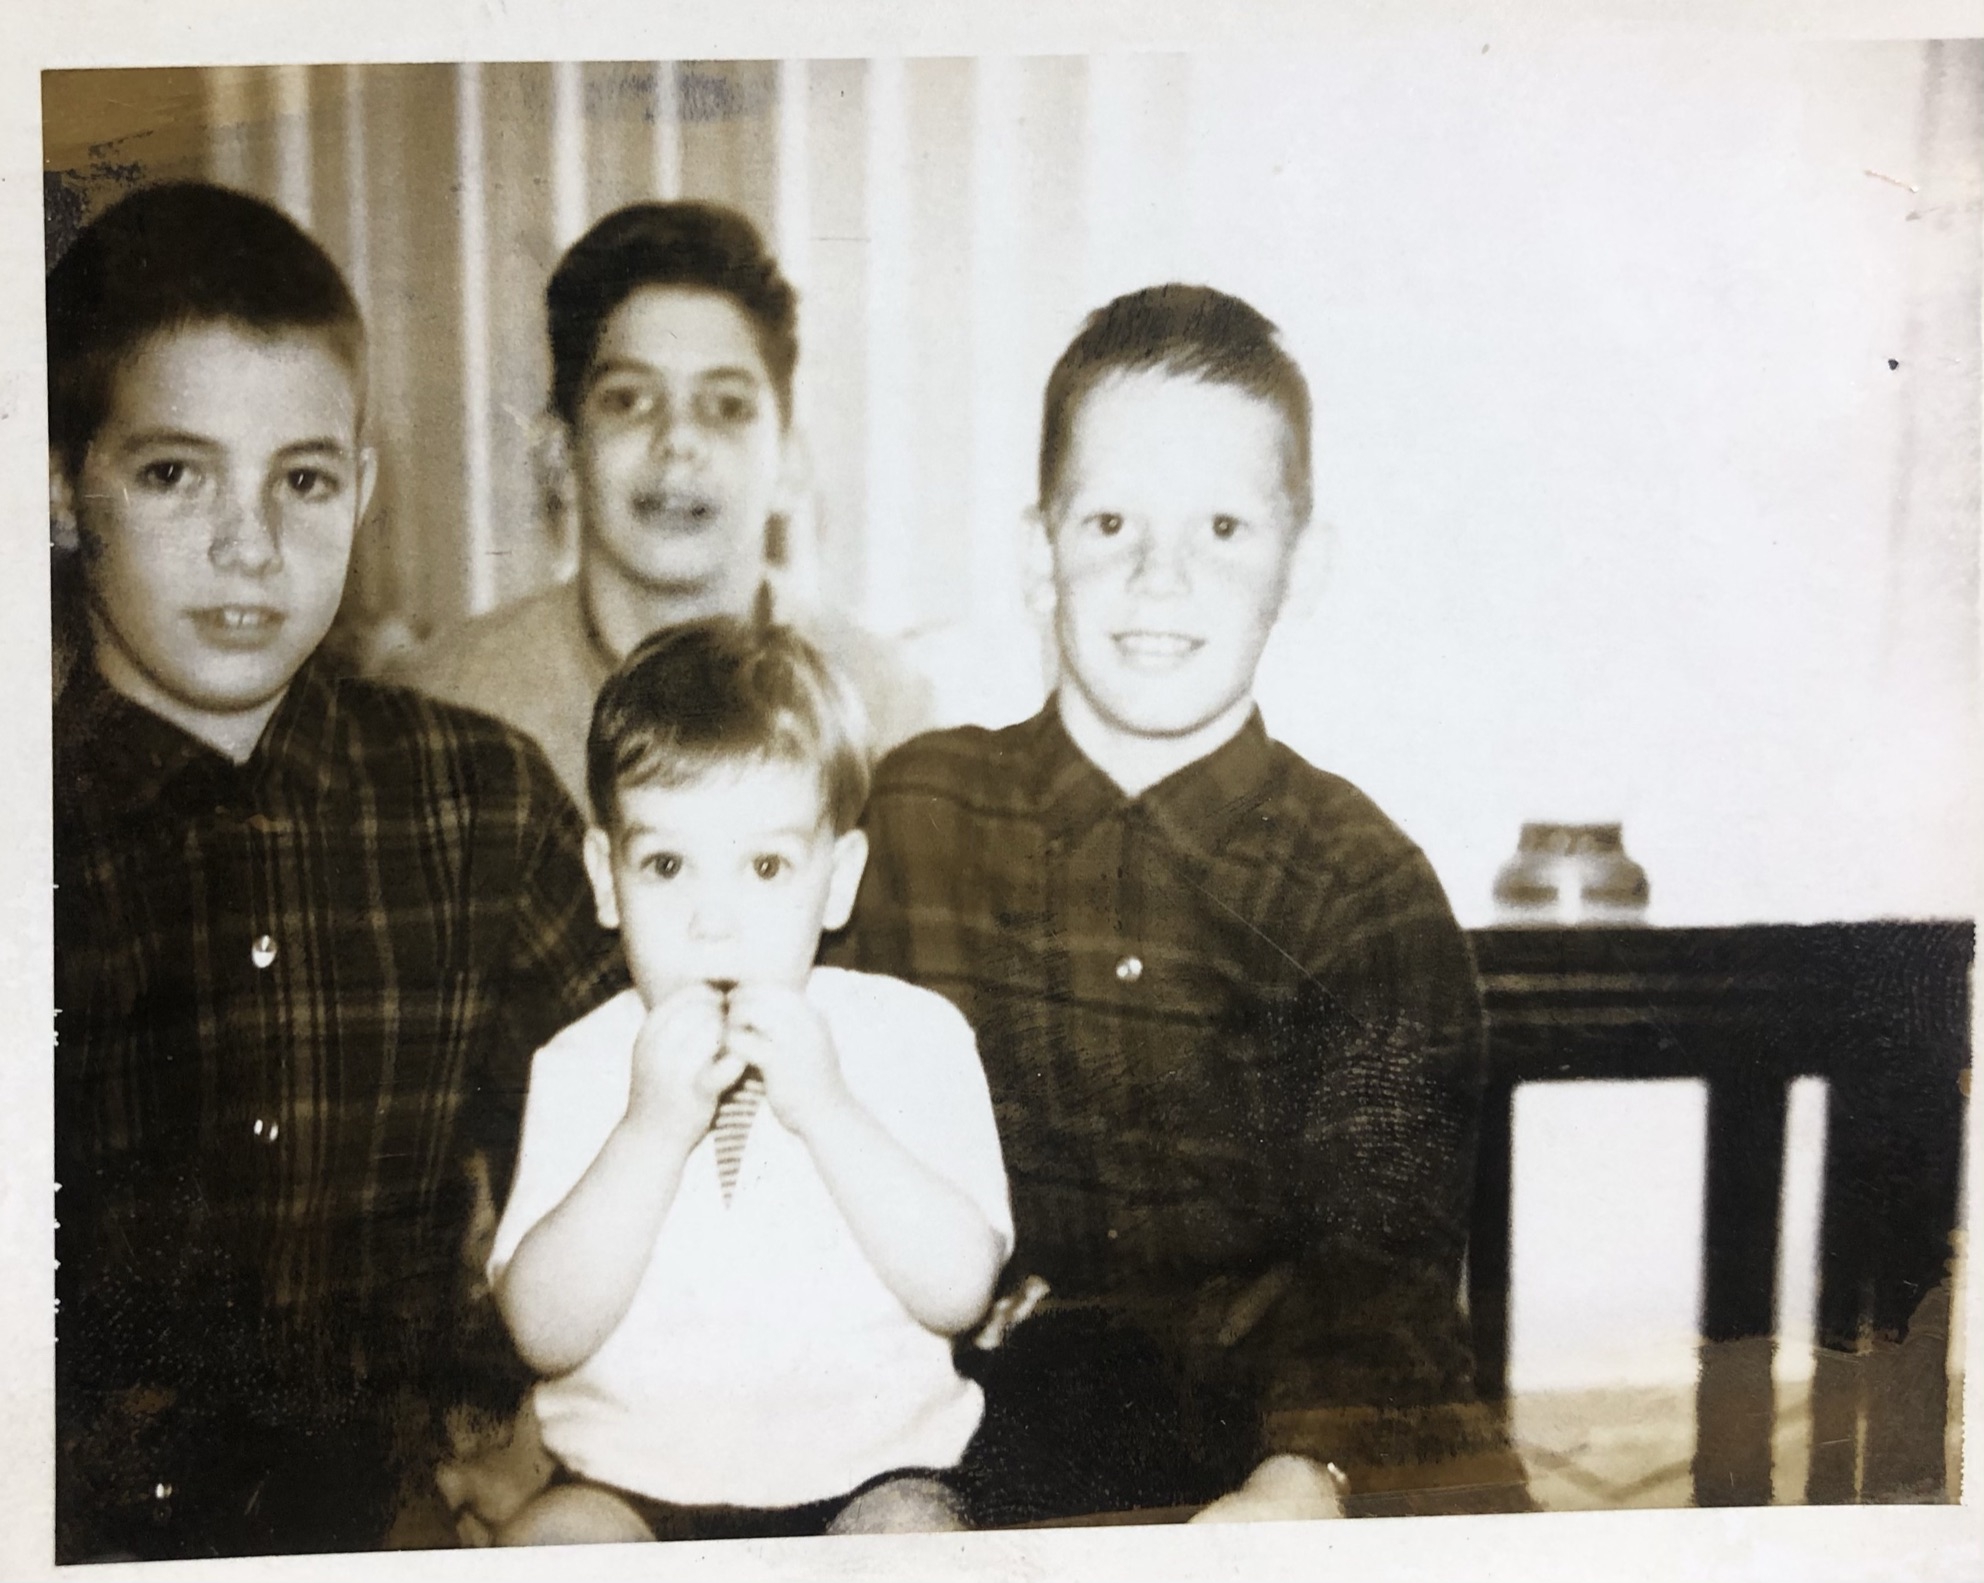 Dan, Kevin. Patrick & Tim 1963